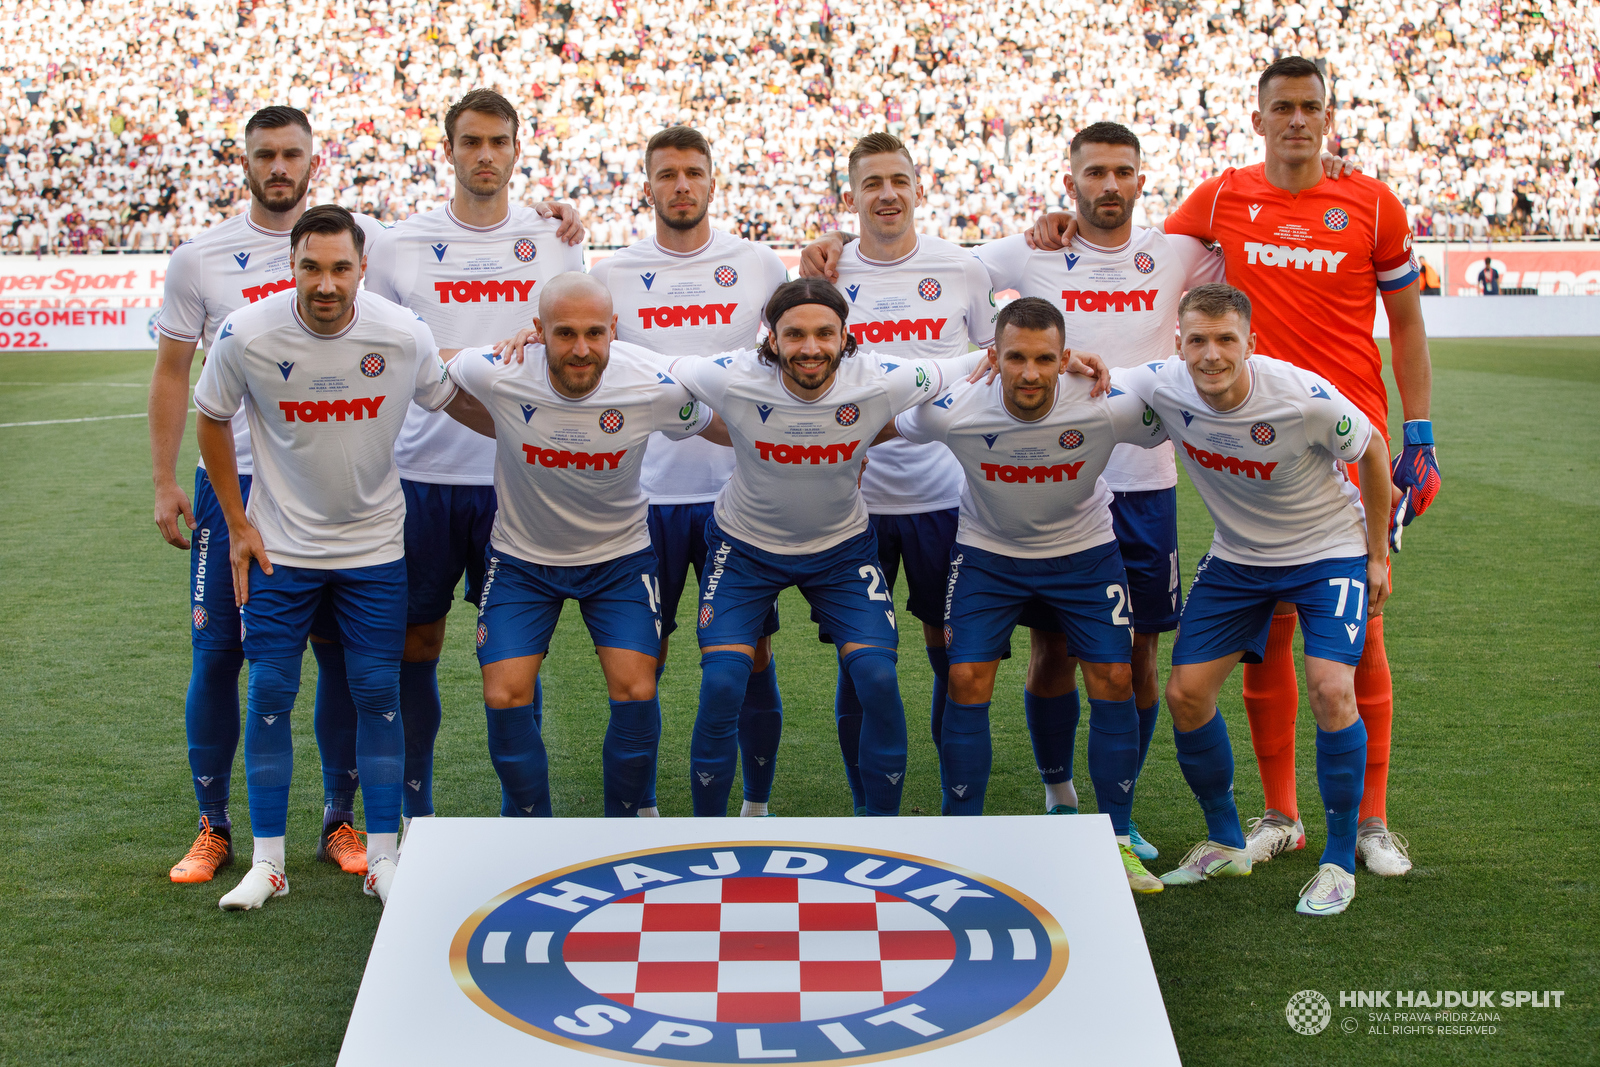 SuperSport Hrvatski kup (Finale): HNK Rijeka - HNK Hajduk Split UŽIVO 